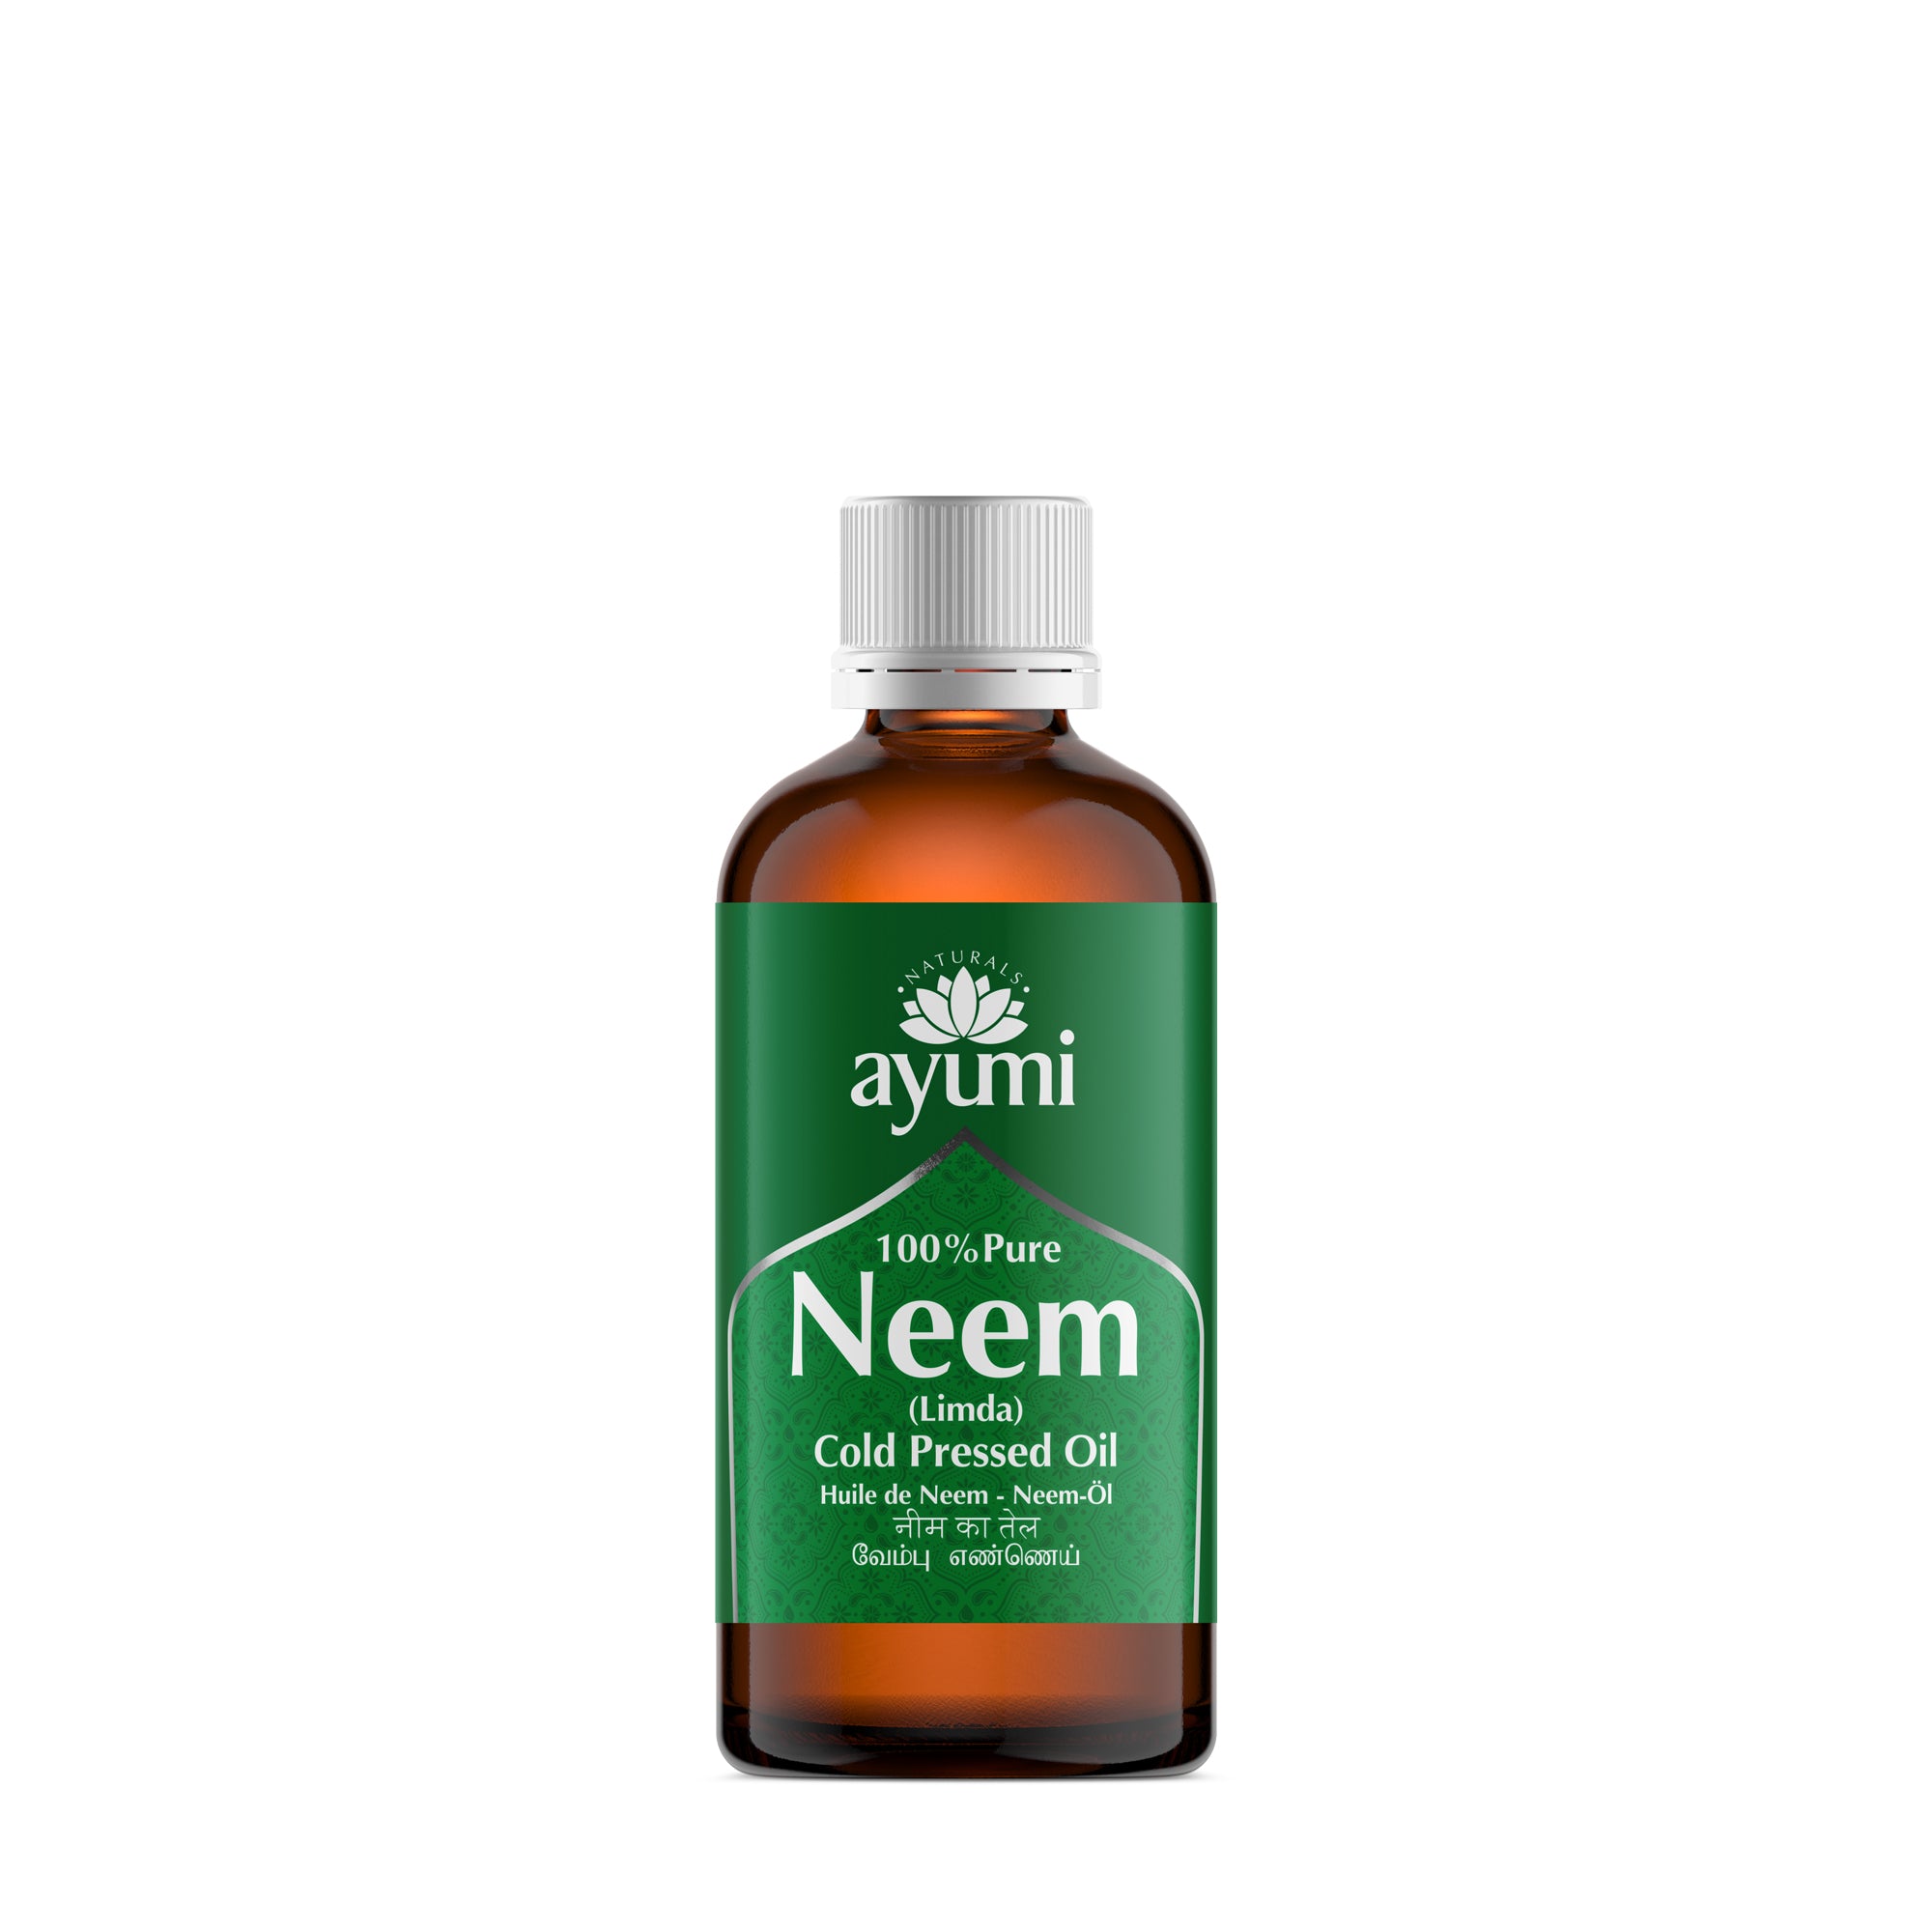 Huile de neem : bienfaits de l'huile de neem bio contre les